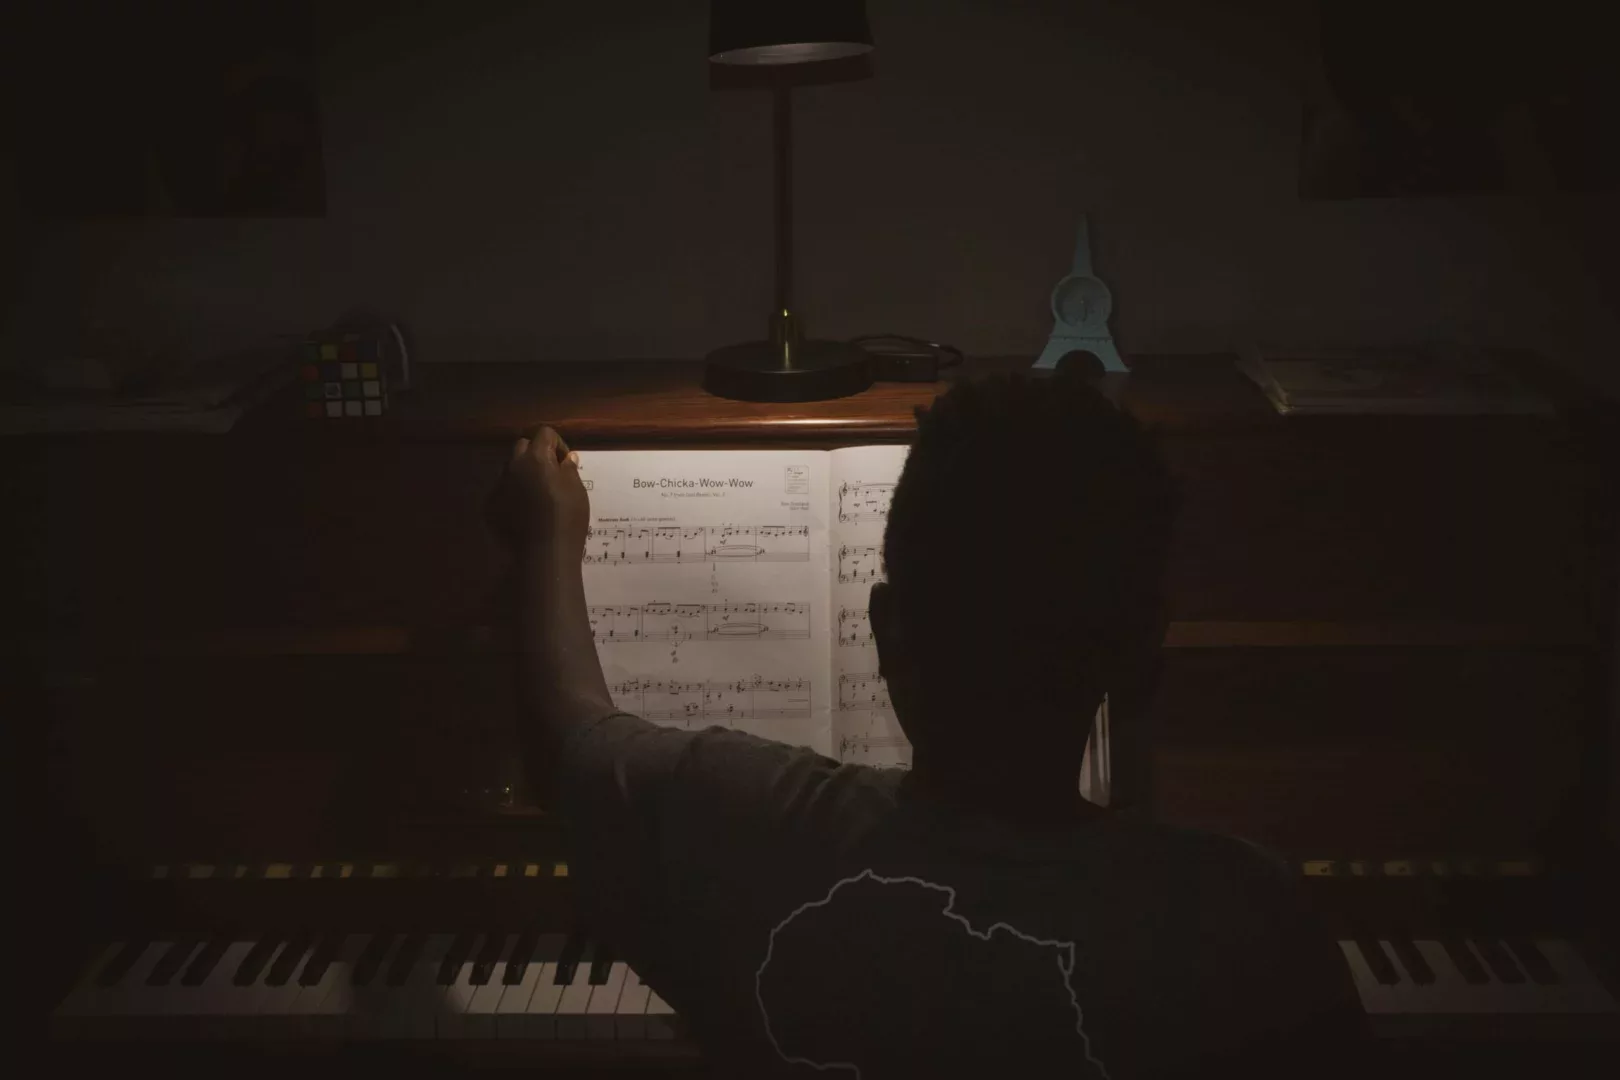 piano at nights under lamp